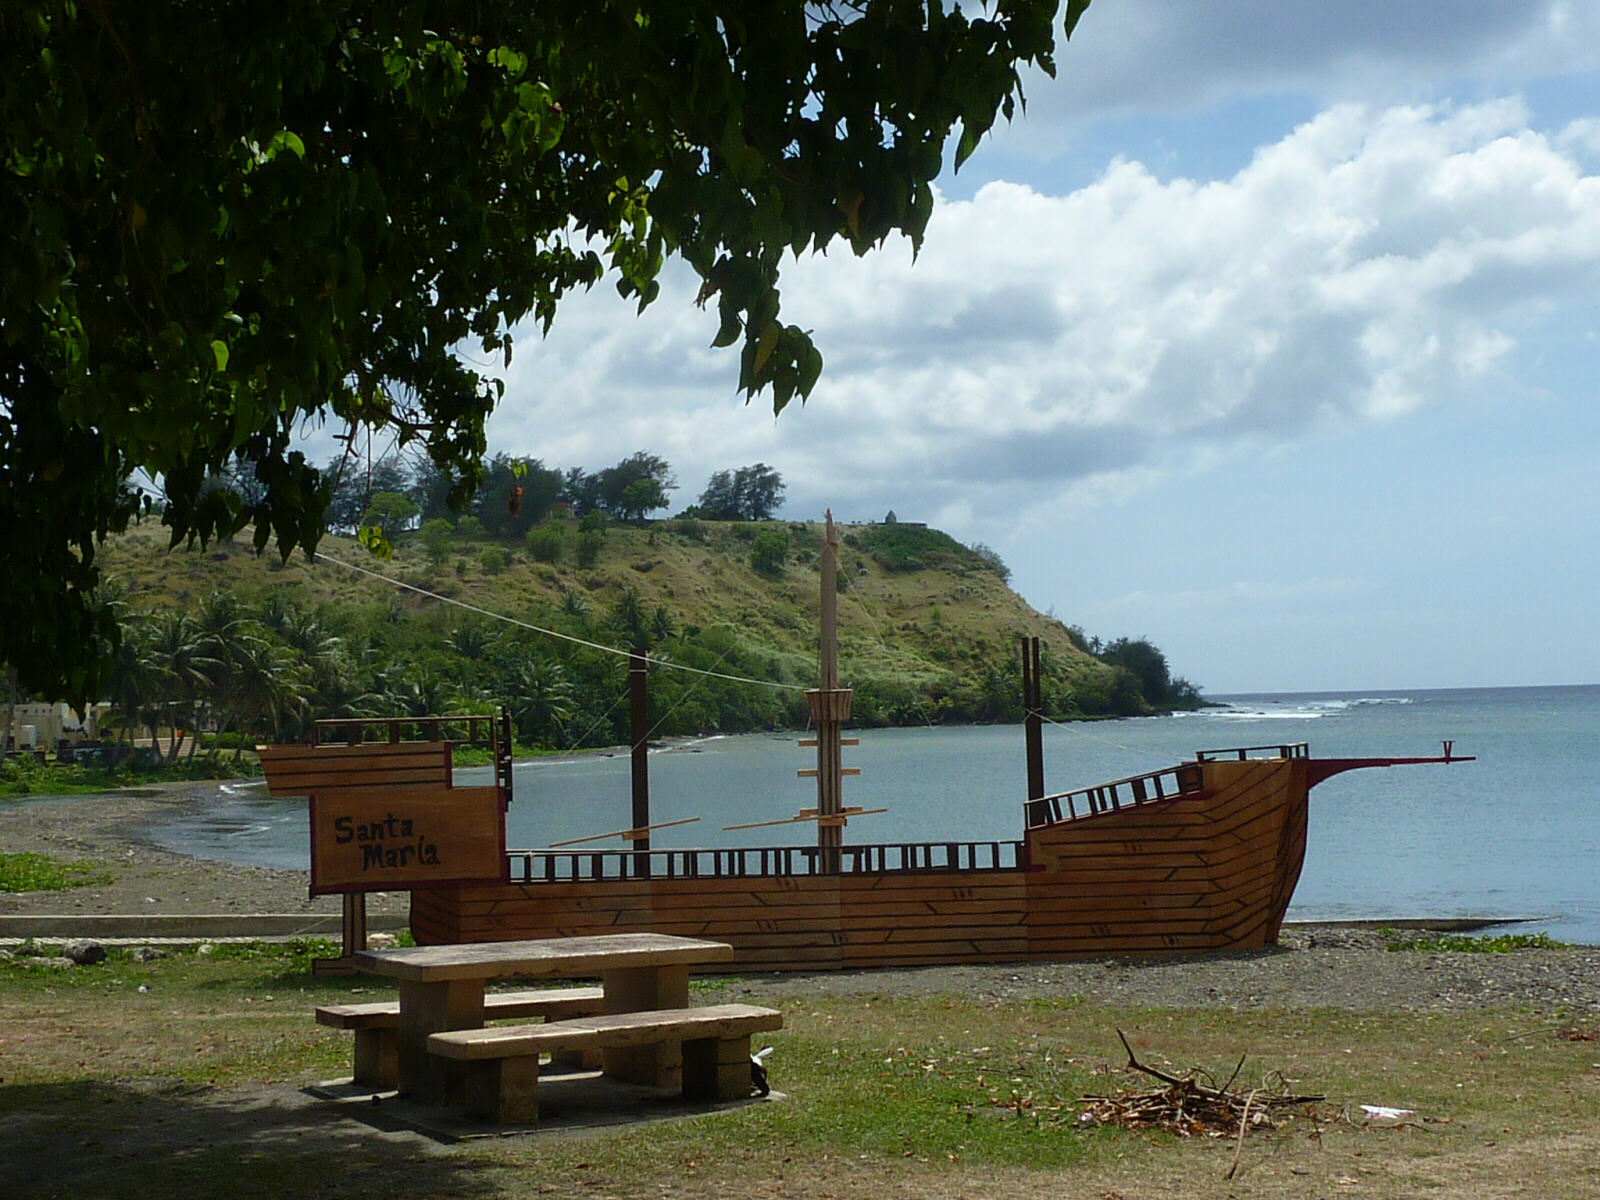 Replica of Magellan's boat at Umtac Bay in Guam